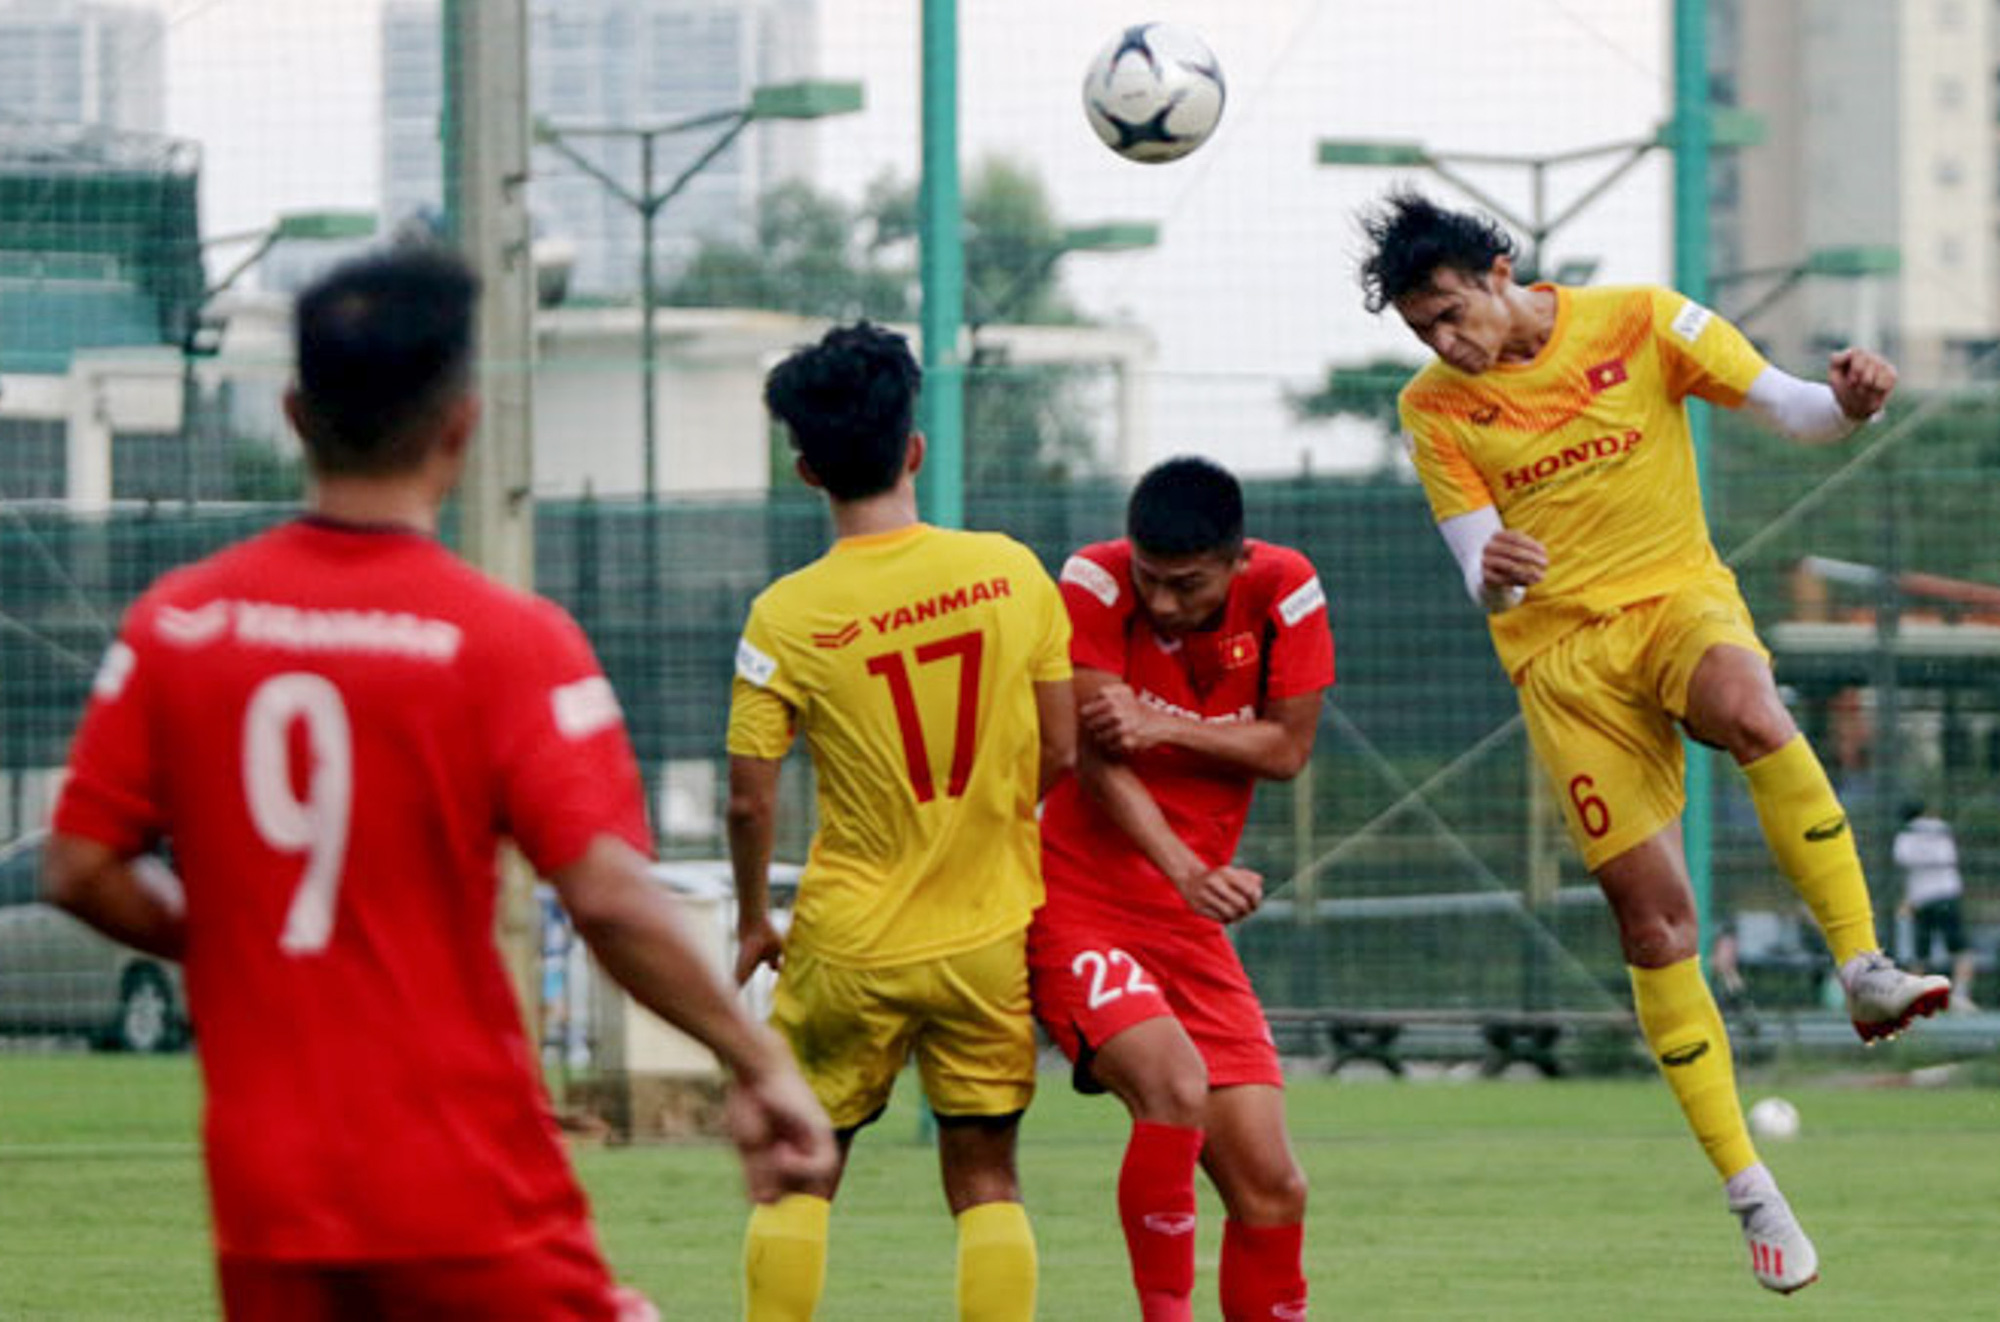 Tiểu Văn Toàn lập công giúp đội nhà chiến thắng trong trận đấu tập của U22 Việt Nam - Ảnh 2.